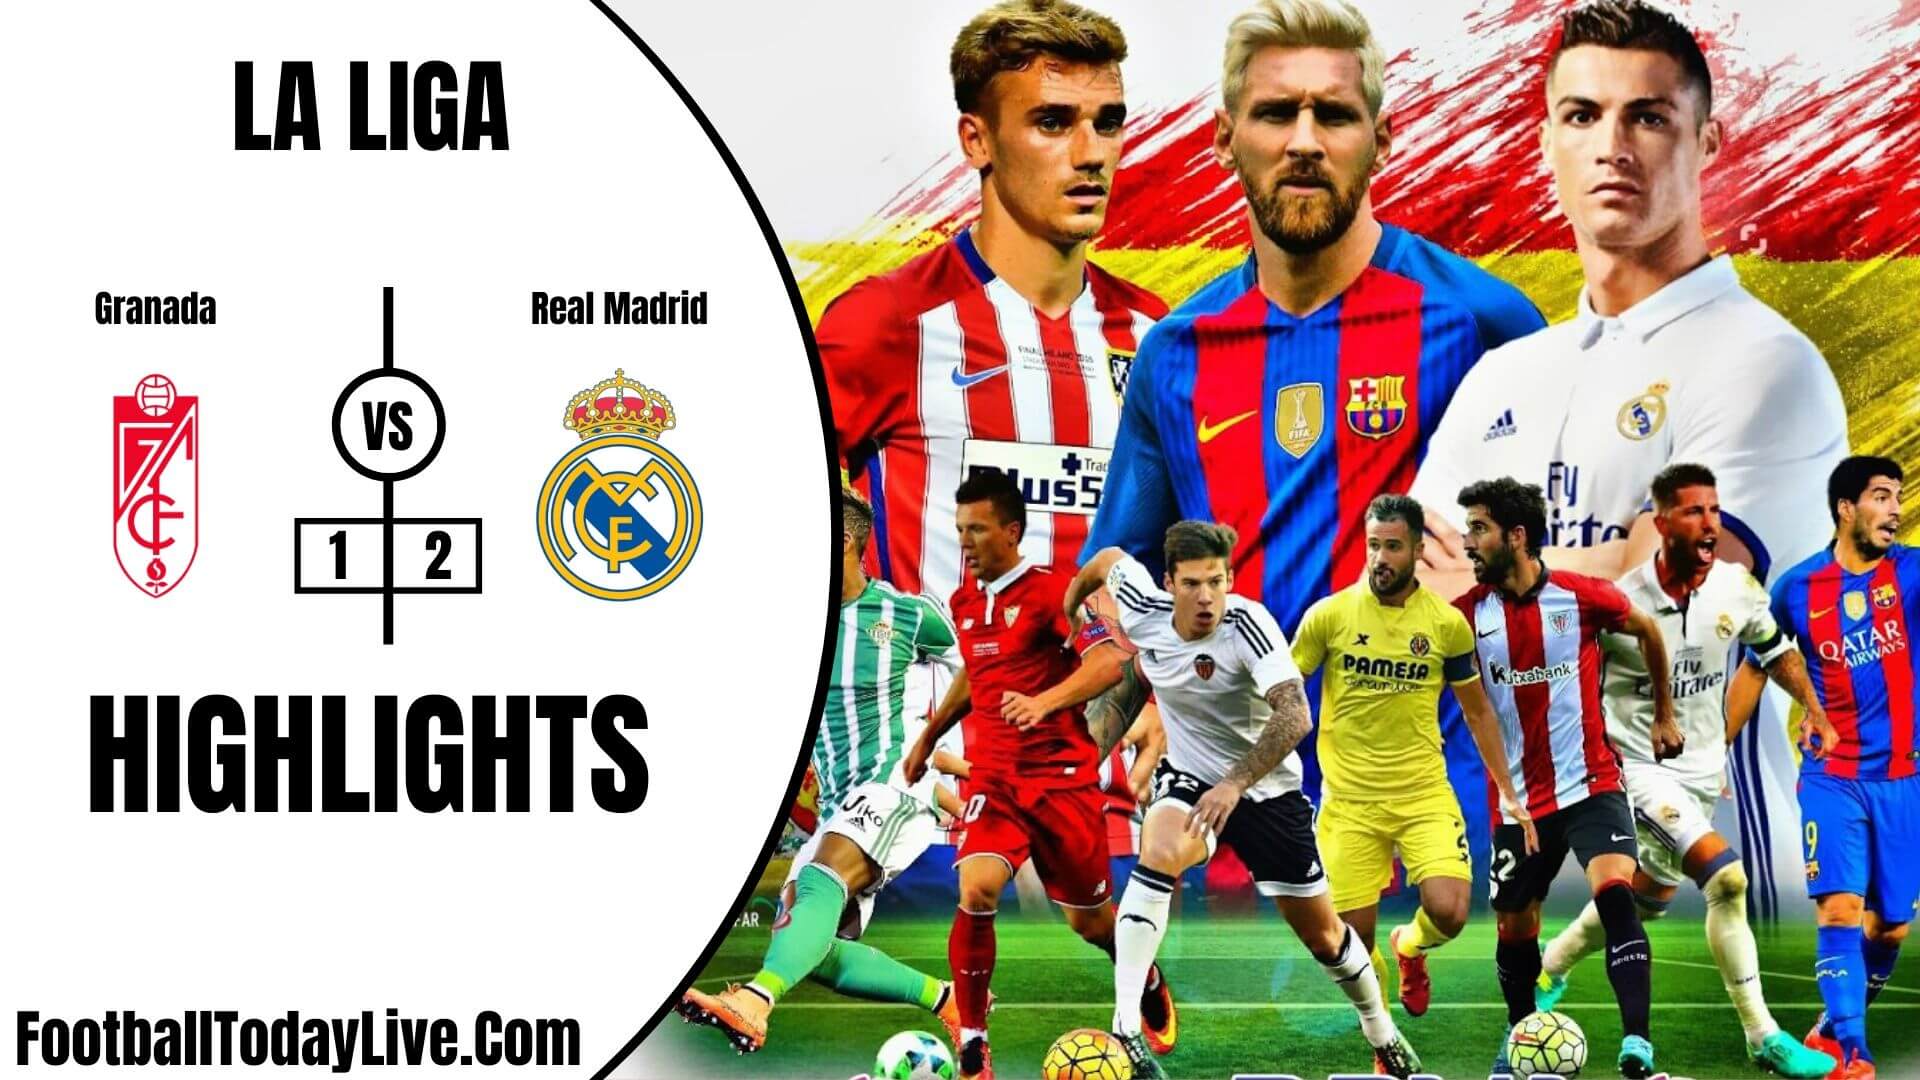 Granada Vs Real Madrid Highlights 2020 La Liga Week 36